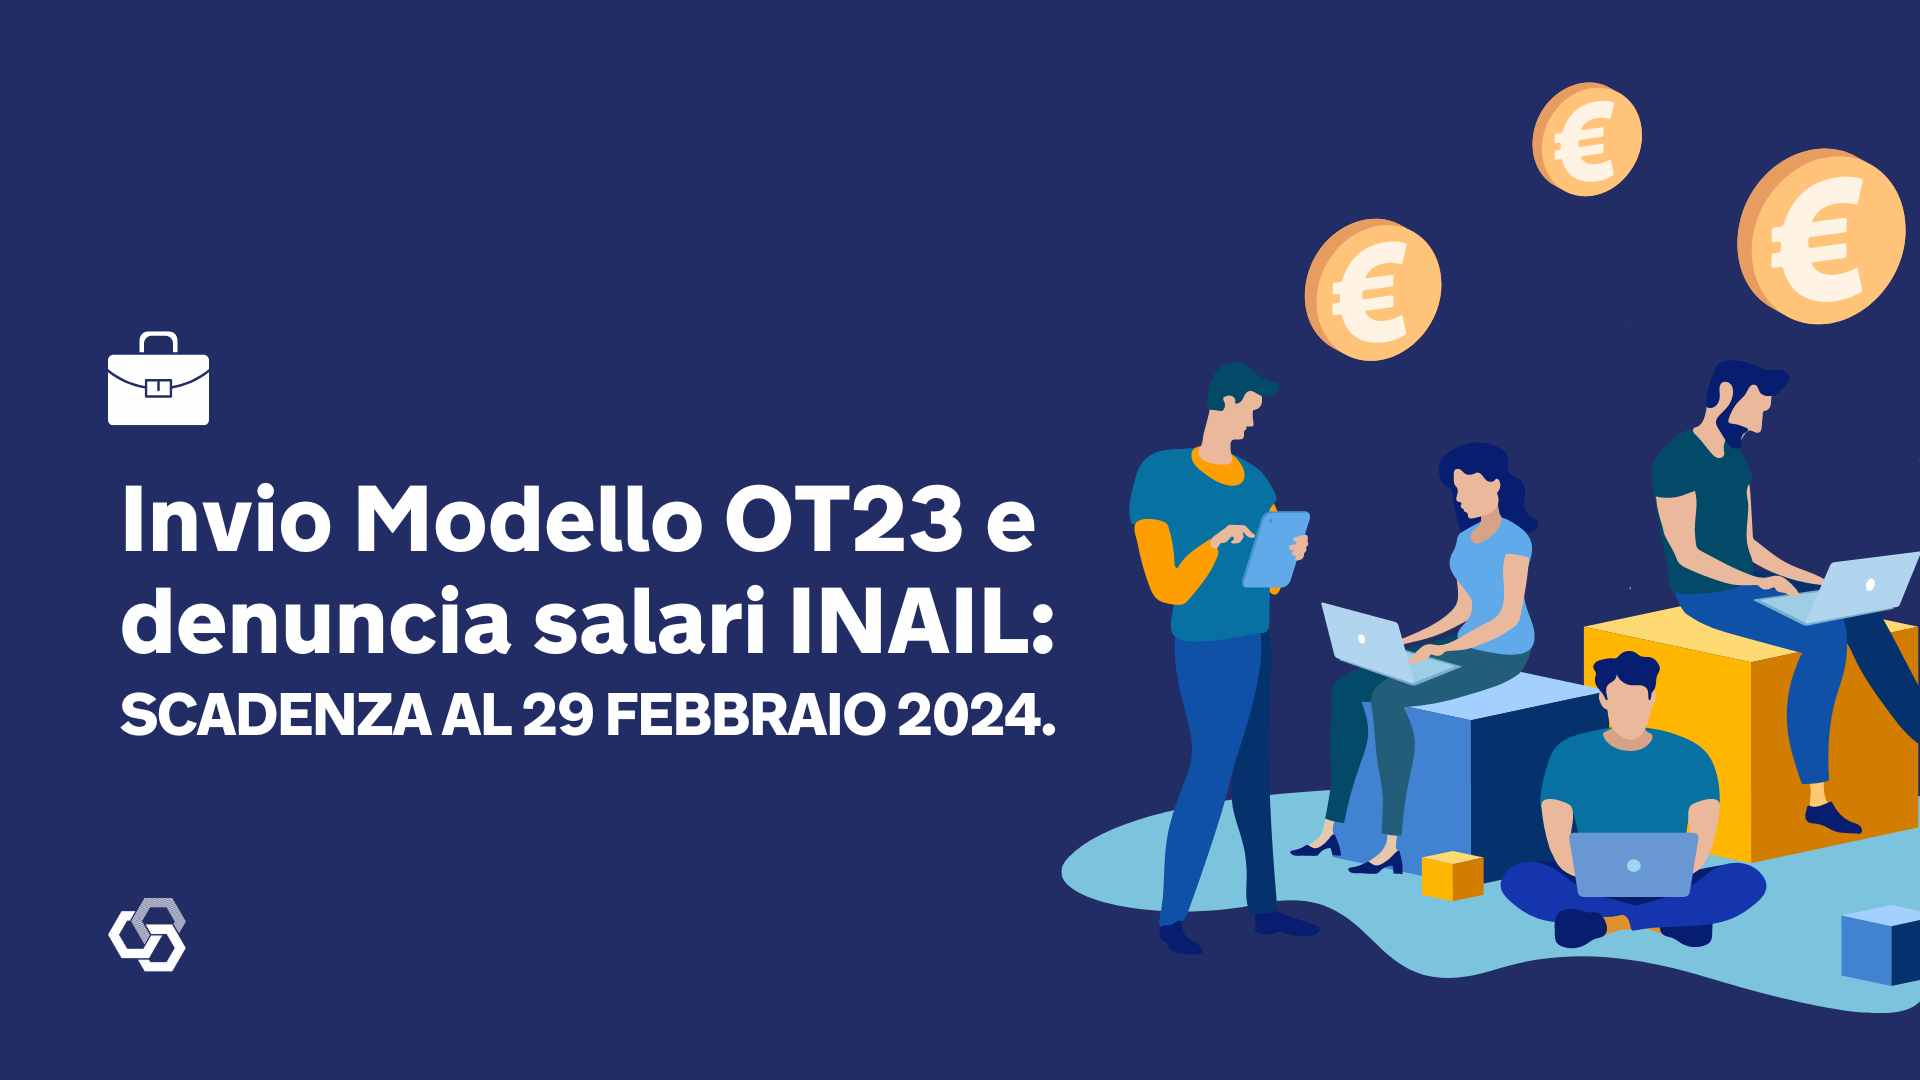 Invio Modello OT23 e denuncia salari INAIL scadenza al 29 febbraio 2024.